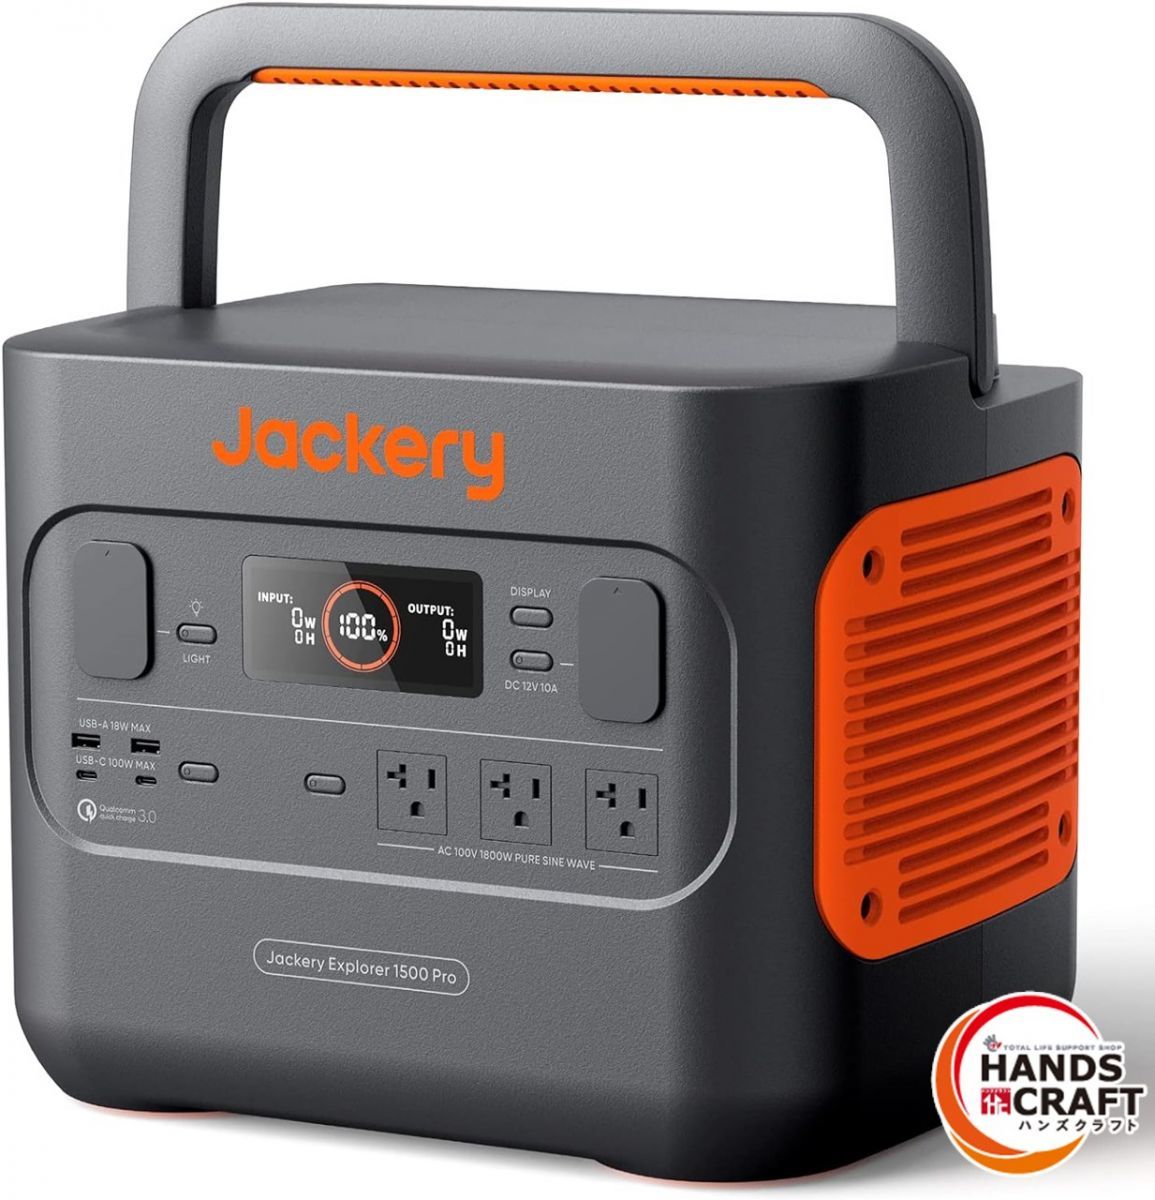 ◆【未使用品】Jackery JE-15000B ポータブル電源 節電 停電対策 家庭用 アウトドア用 1500 Pro ポータブルバッテリー 未開封品